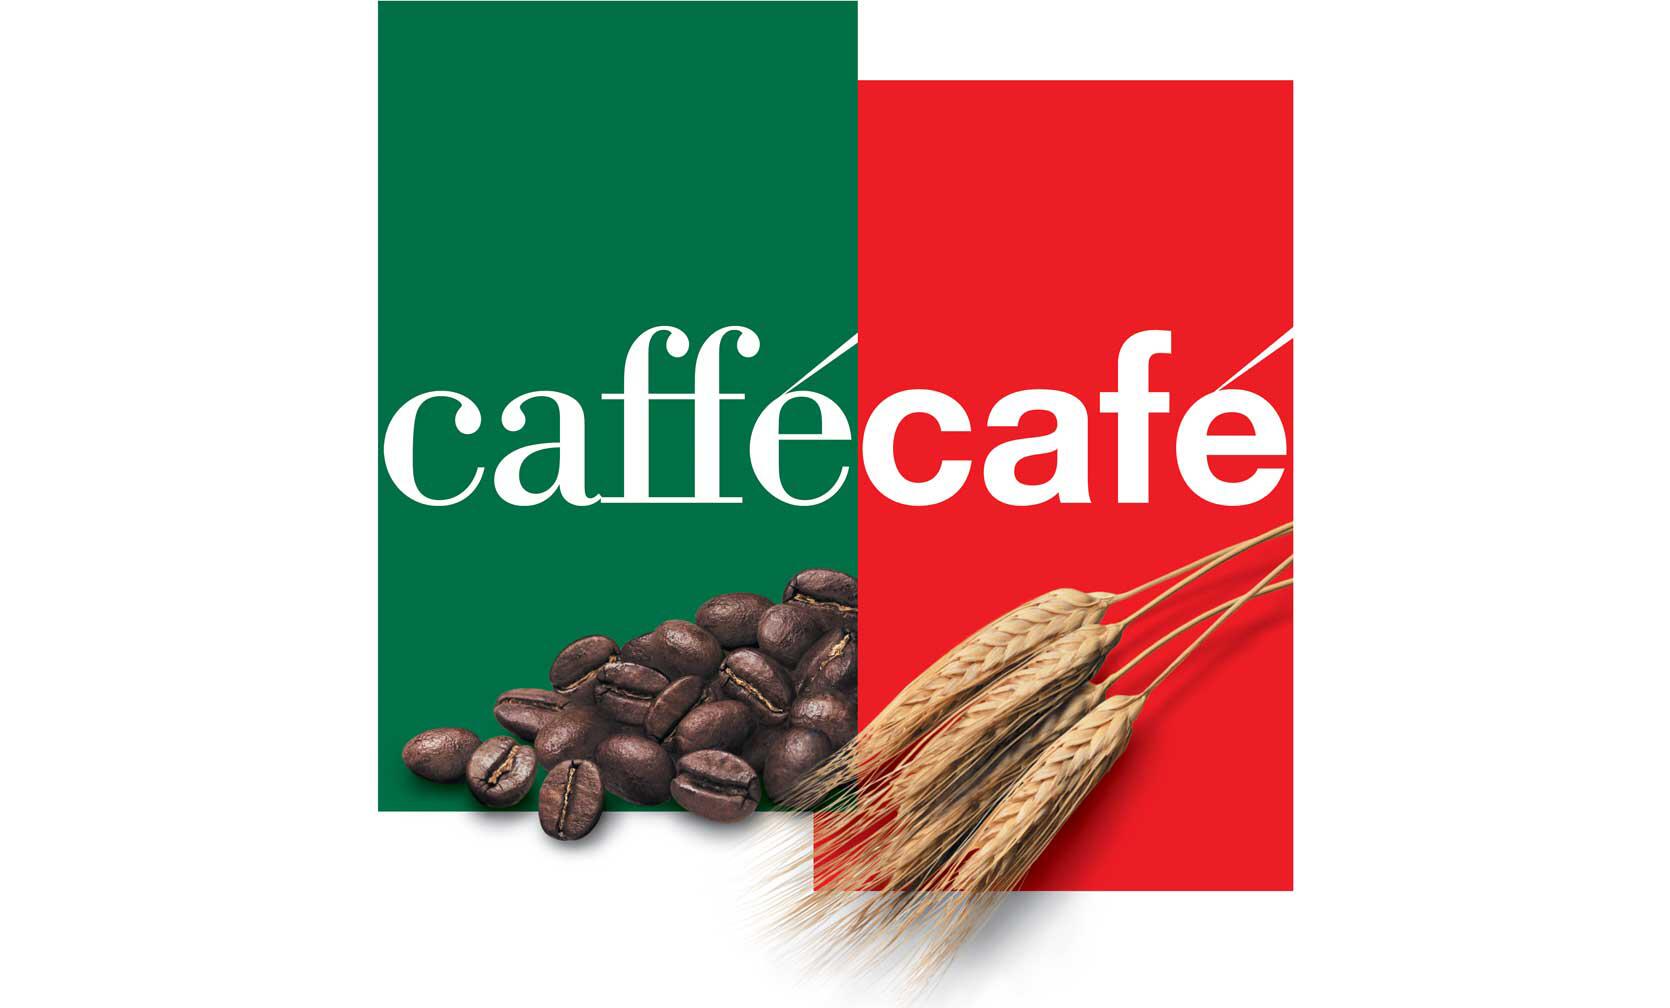 19A_11_CafféCafé Branding Program_Bart Crosby